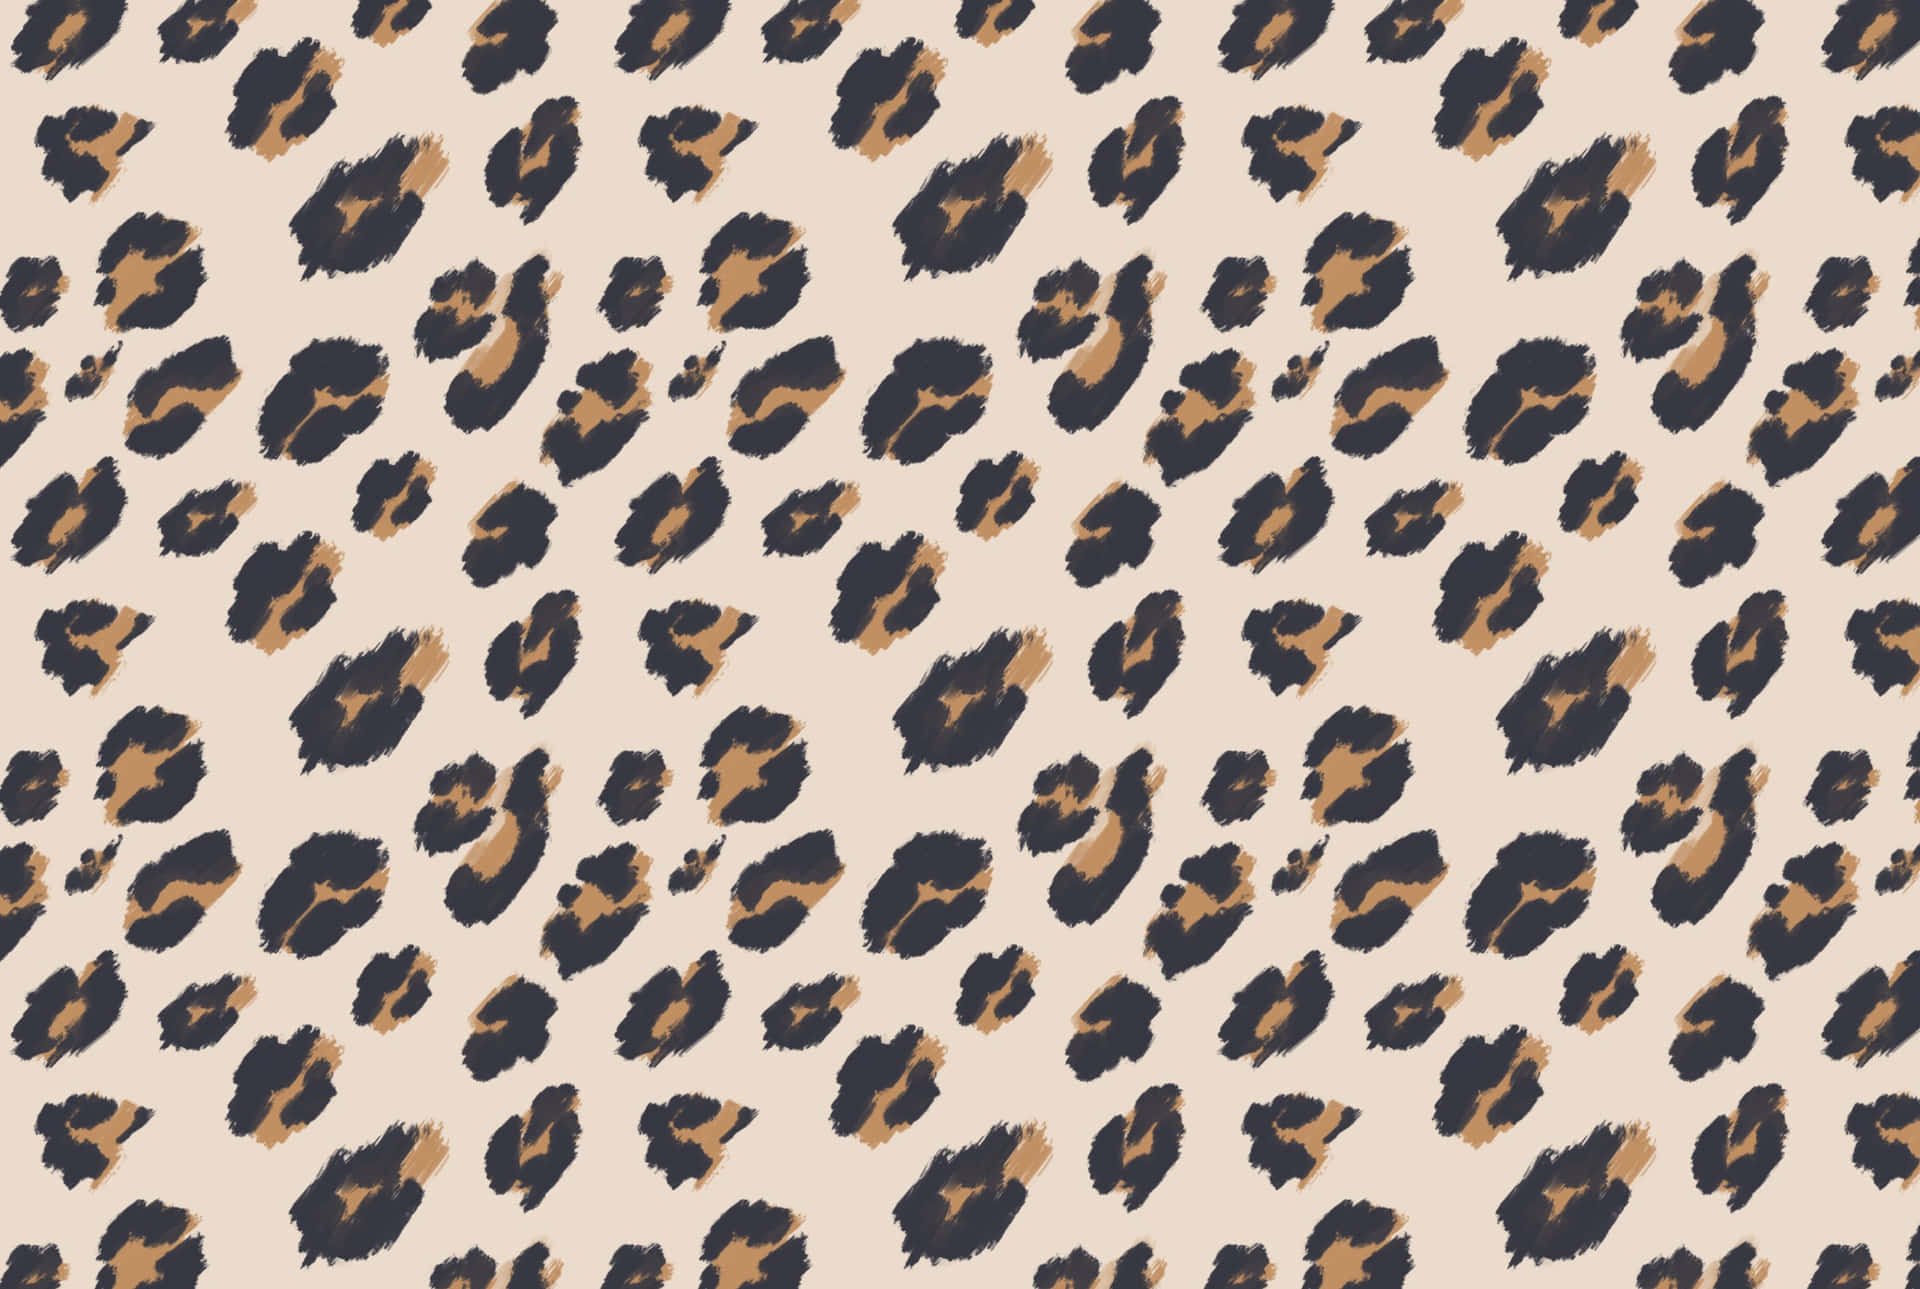  Leopardenmuster Hintergrundbild 1920x1289. Leopard Print Background